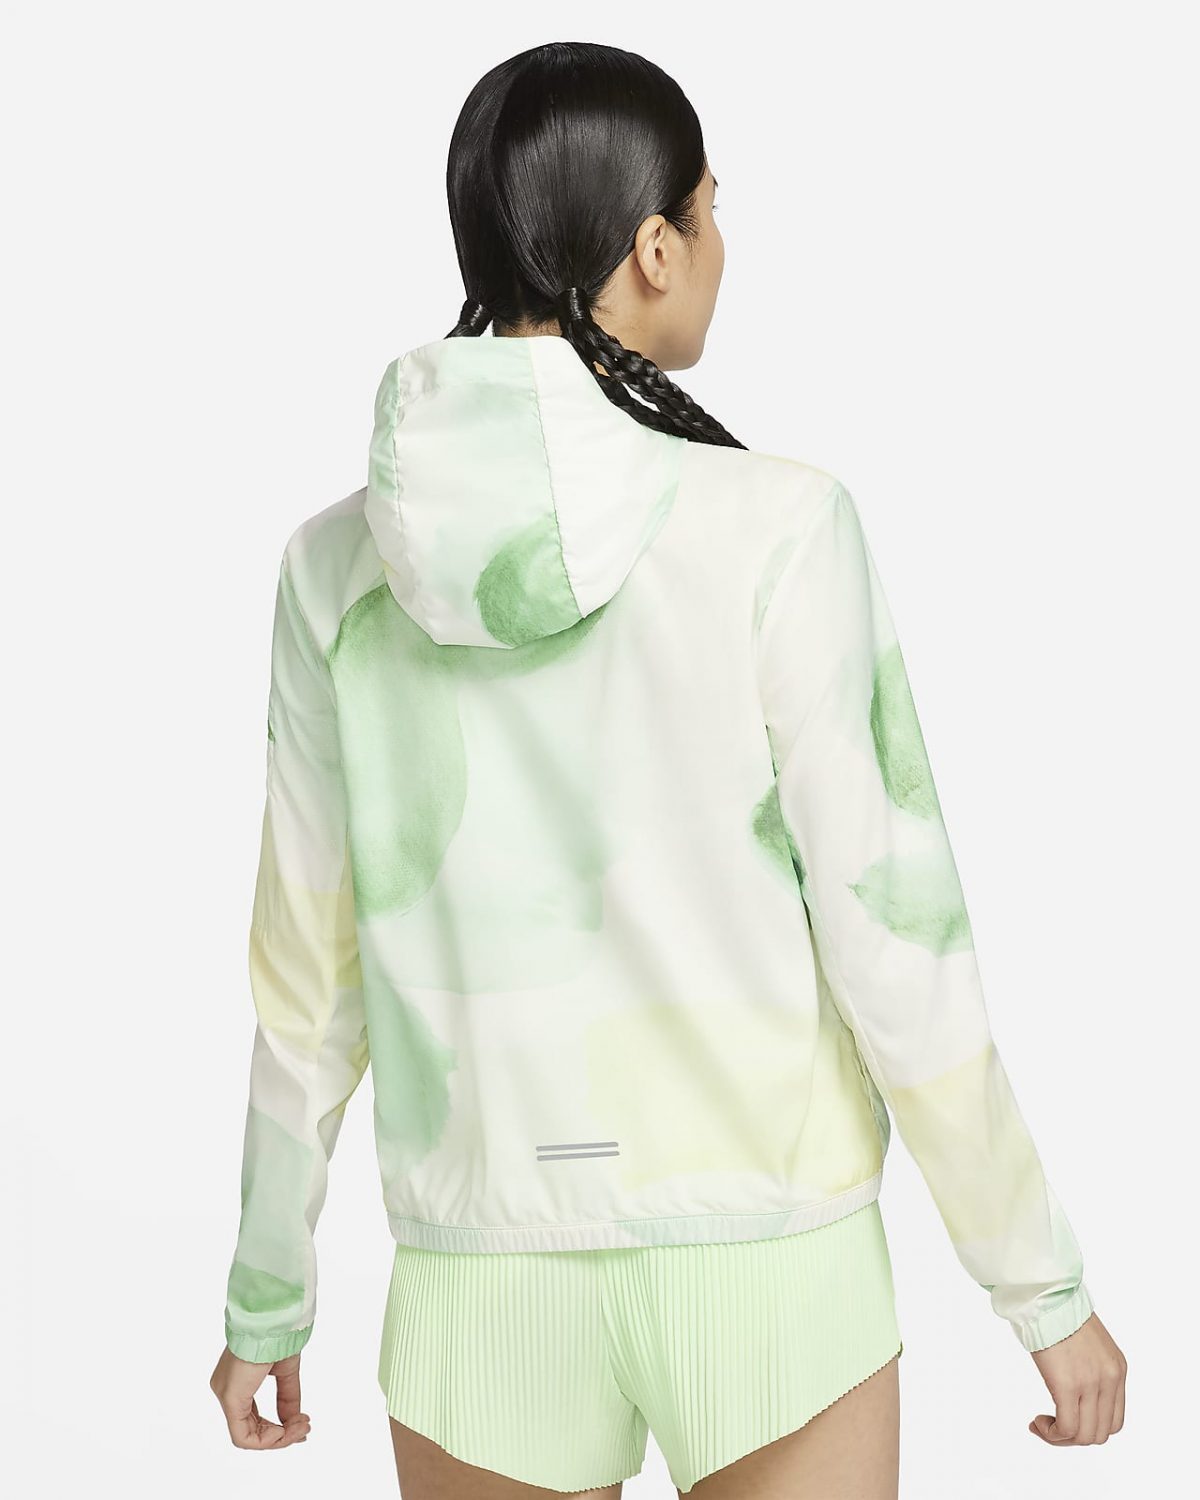 Женская куртка Nike Impossibly Light белая фотография